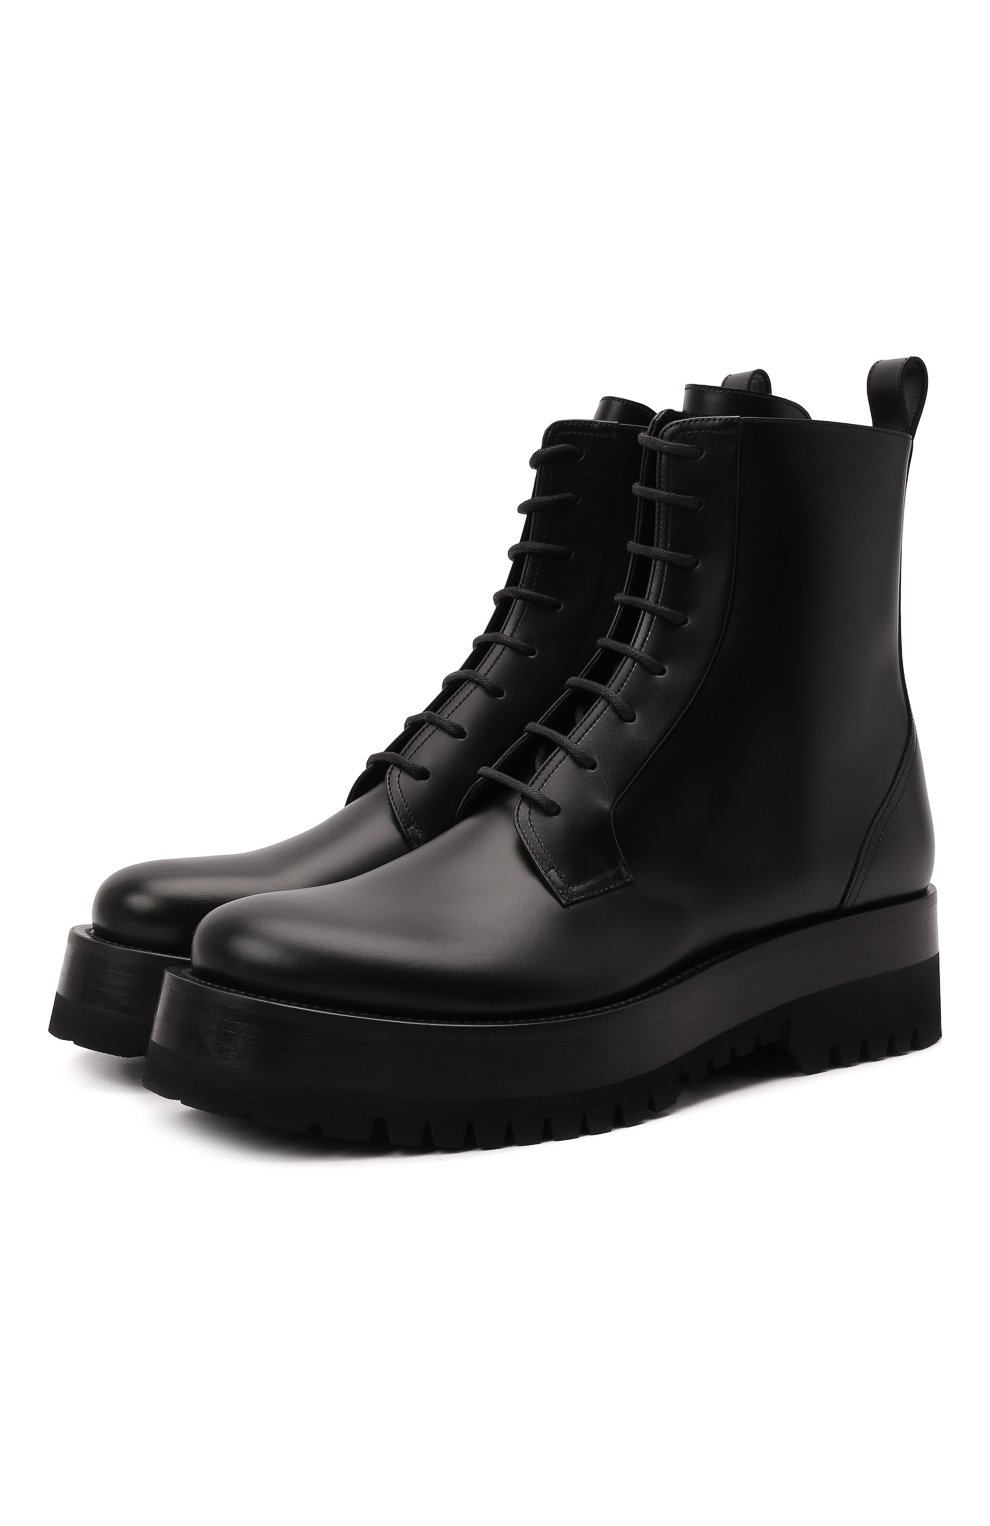 Мужские кожаные ботинки upraise VALENTINO черного цвета, арт. WY0S0E81/LZP | Фото 1 (Каблук высота: Высокий; Материал внешний: Кожа; Мужское Кросс-КТ: Ботинки-обувь, Байкеры-обувь; Материал внутренний: Натуральная кожа; Материал утеплителя: Без утеплителя; Подошва: Массивная; Длина стельки: 25,0, 25,6, 26,3, 26,6, 27,0, 27,3, 27,6, 28,0, 28,3, 28,6, 29,0)